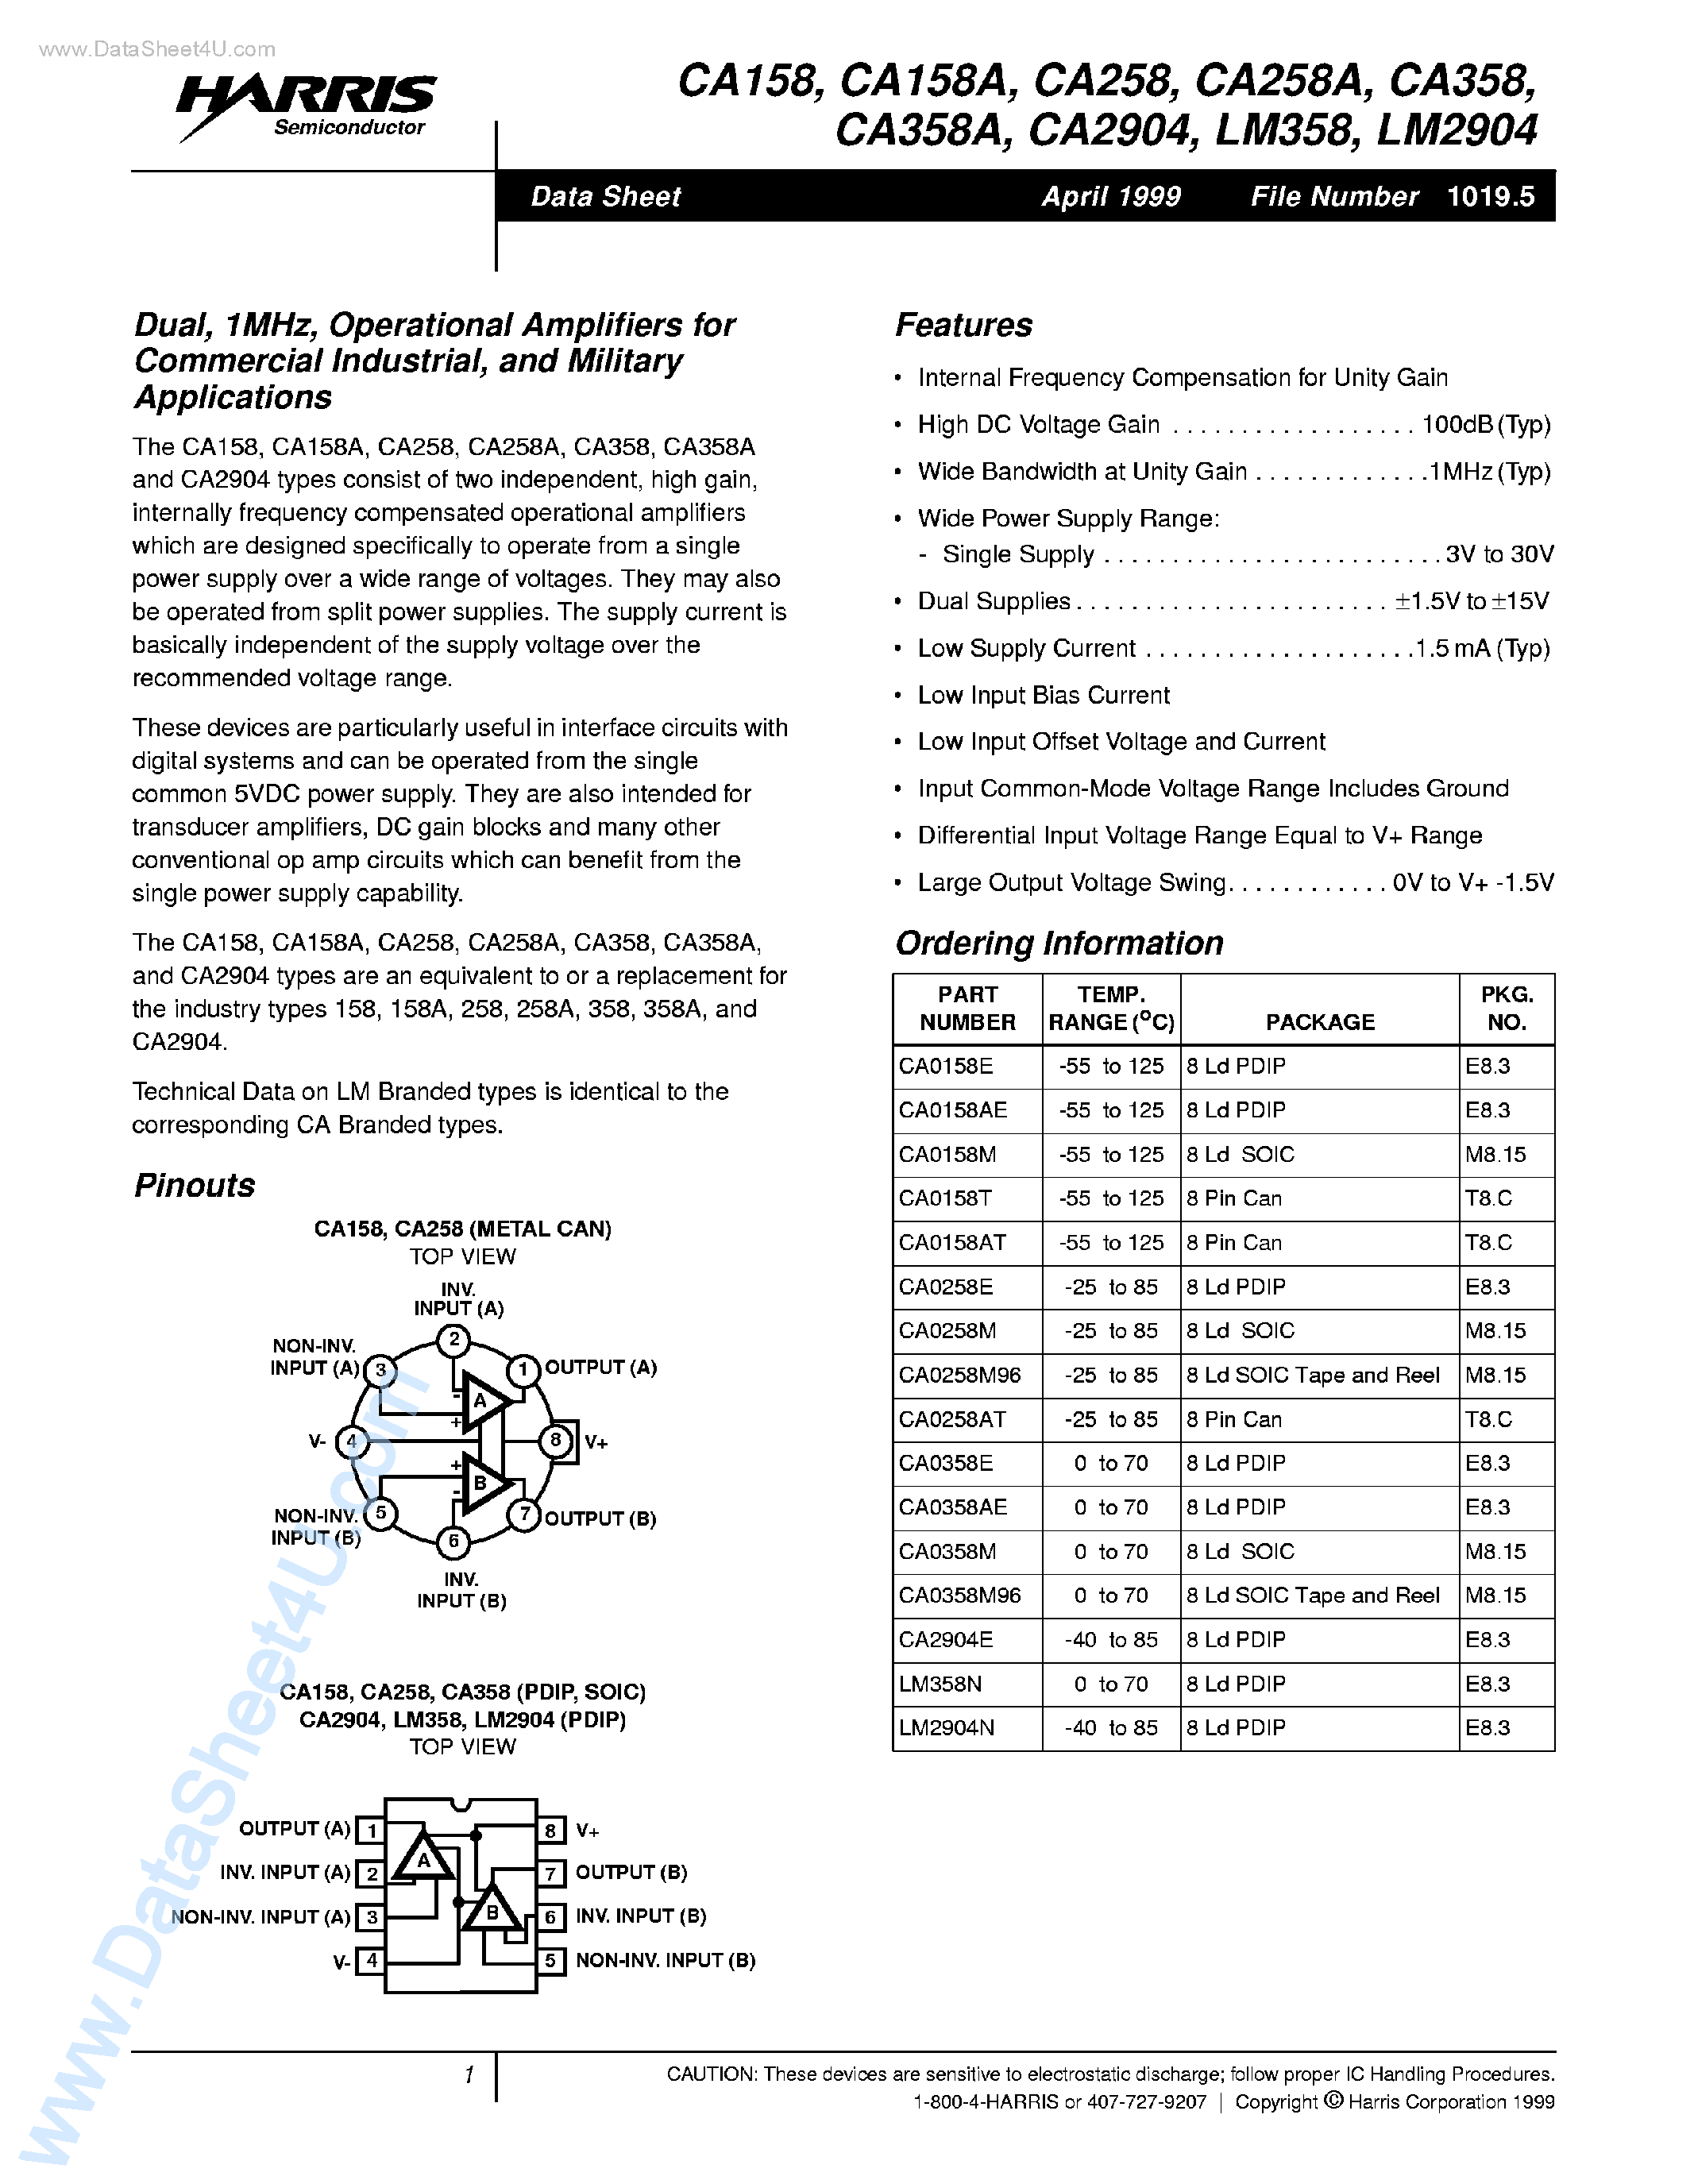 Даташит CA258 - (CA258A / CA258 / CA2904) Operational Amplifiers страница 1